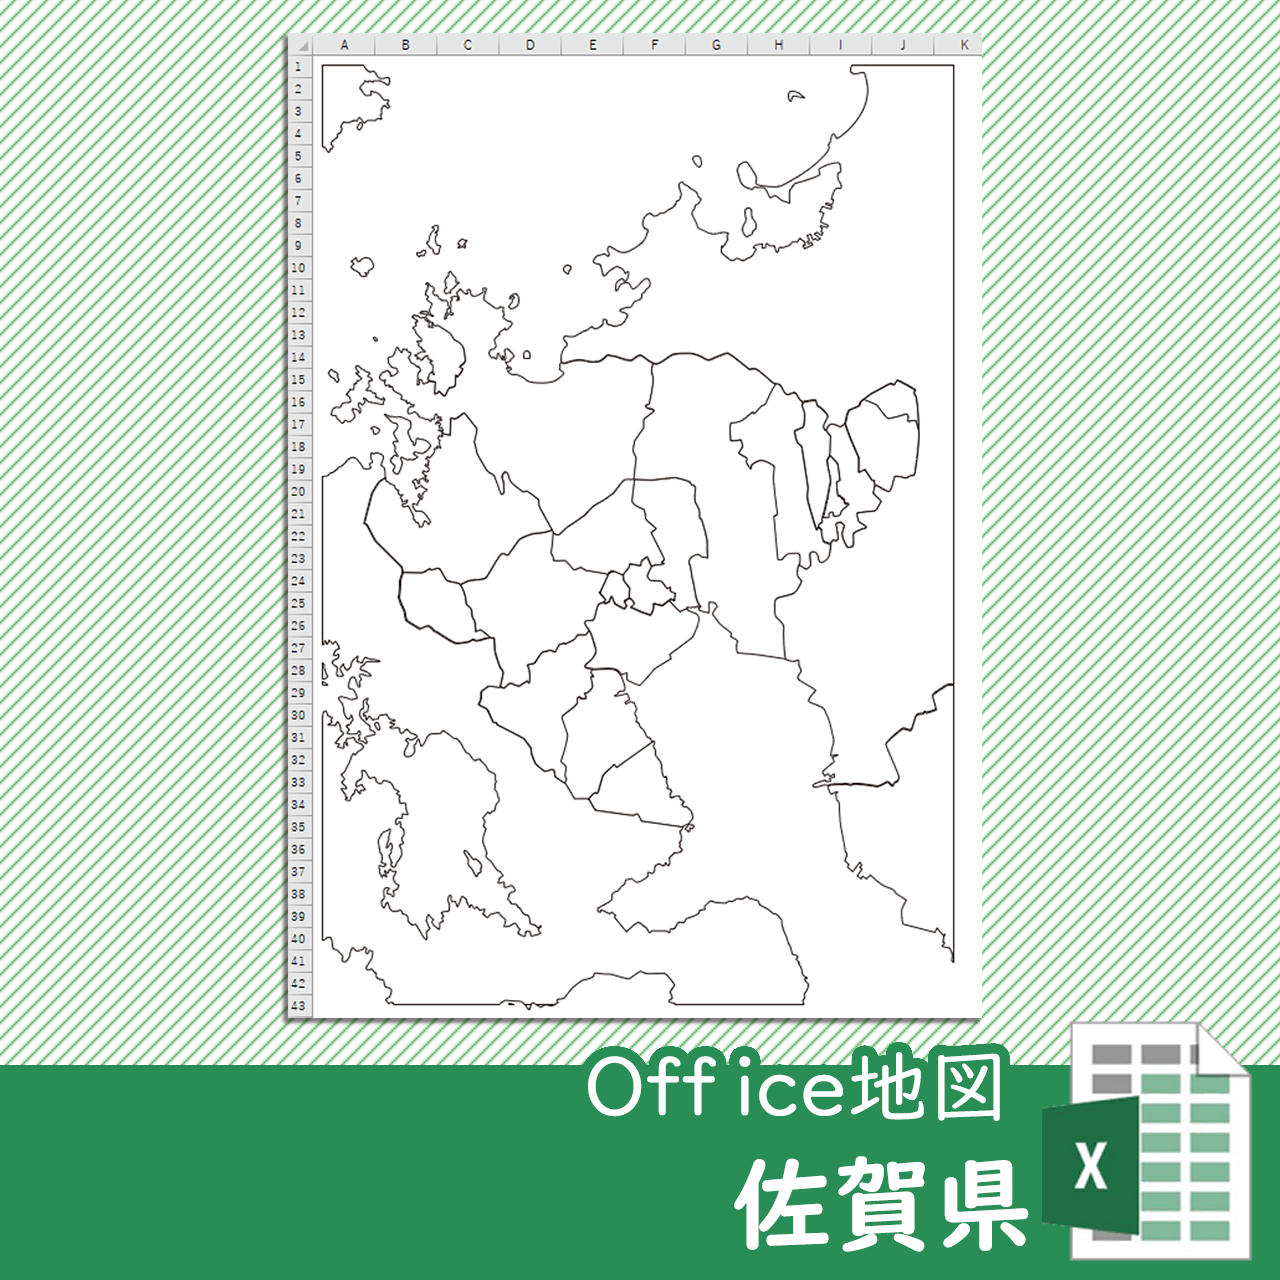 佐賀県のoffice地図